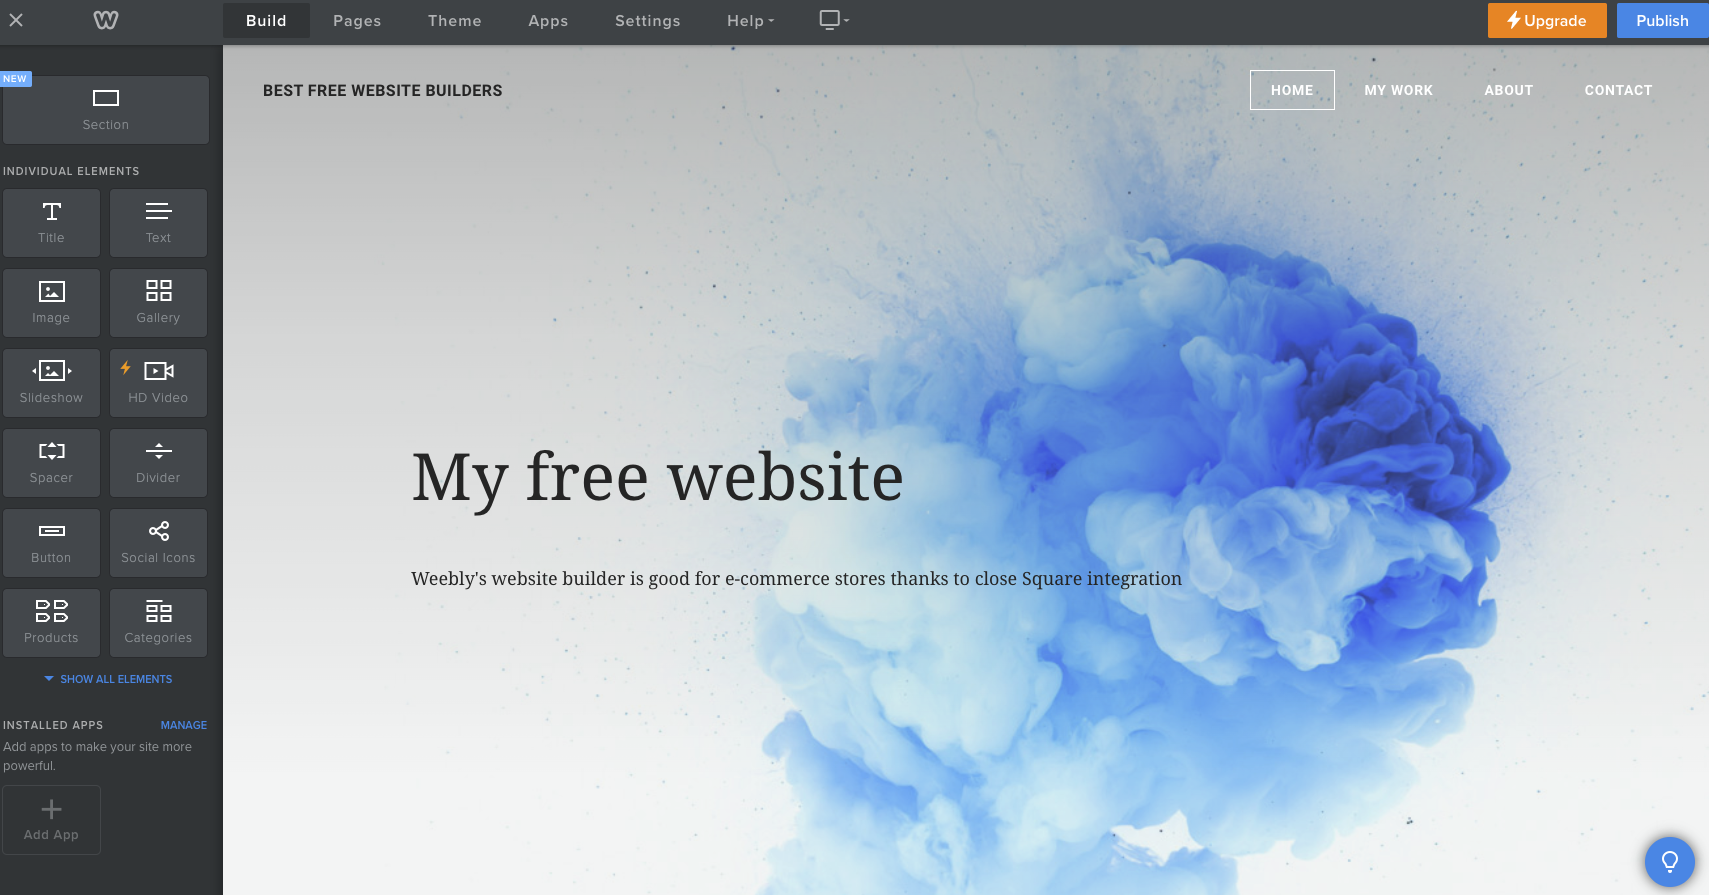 Sitio web creado con Weebly